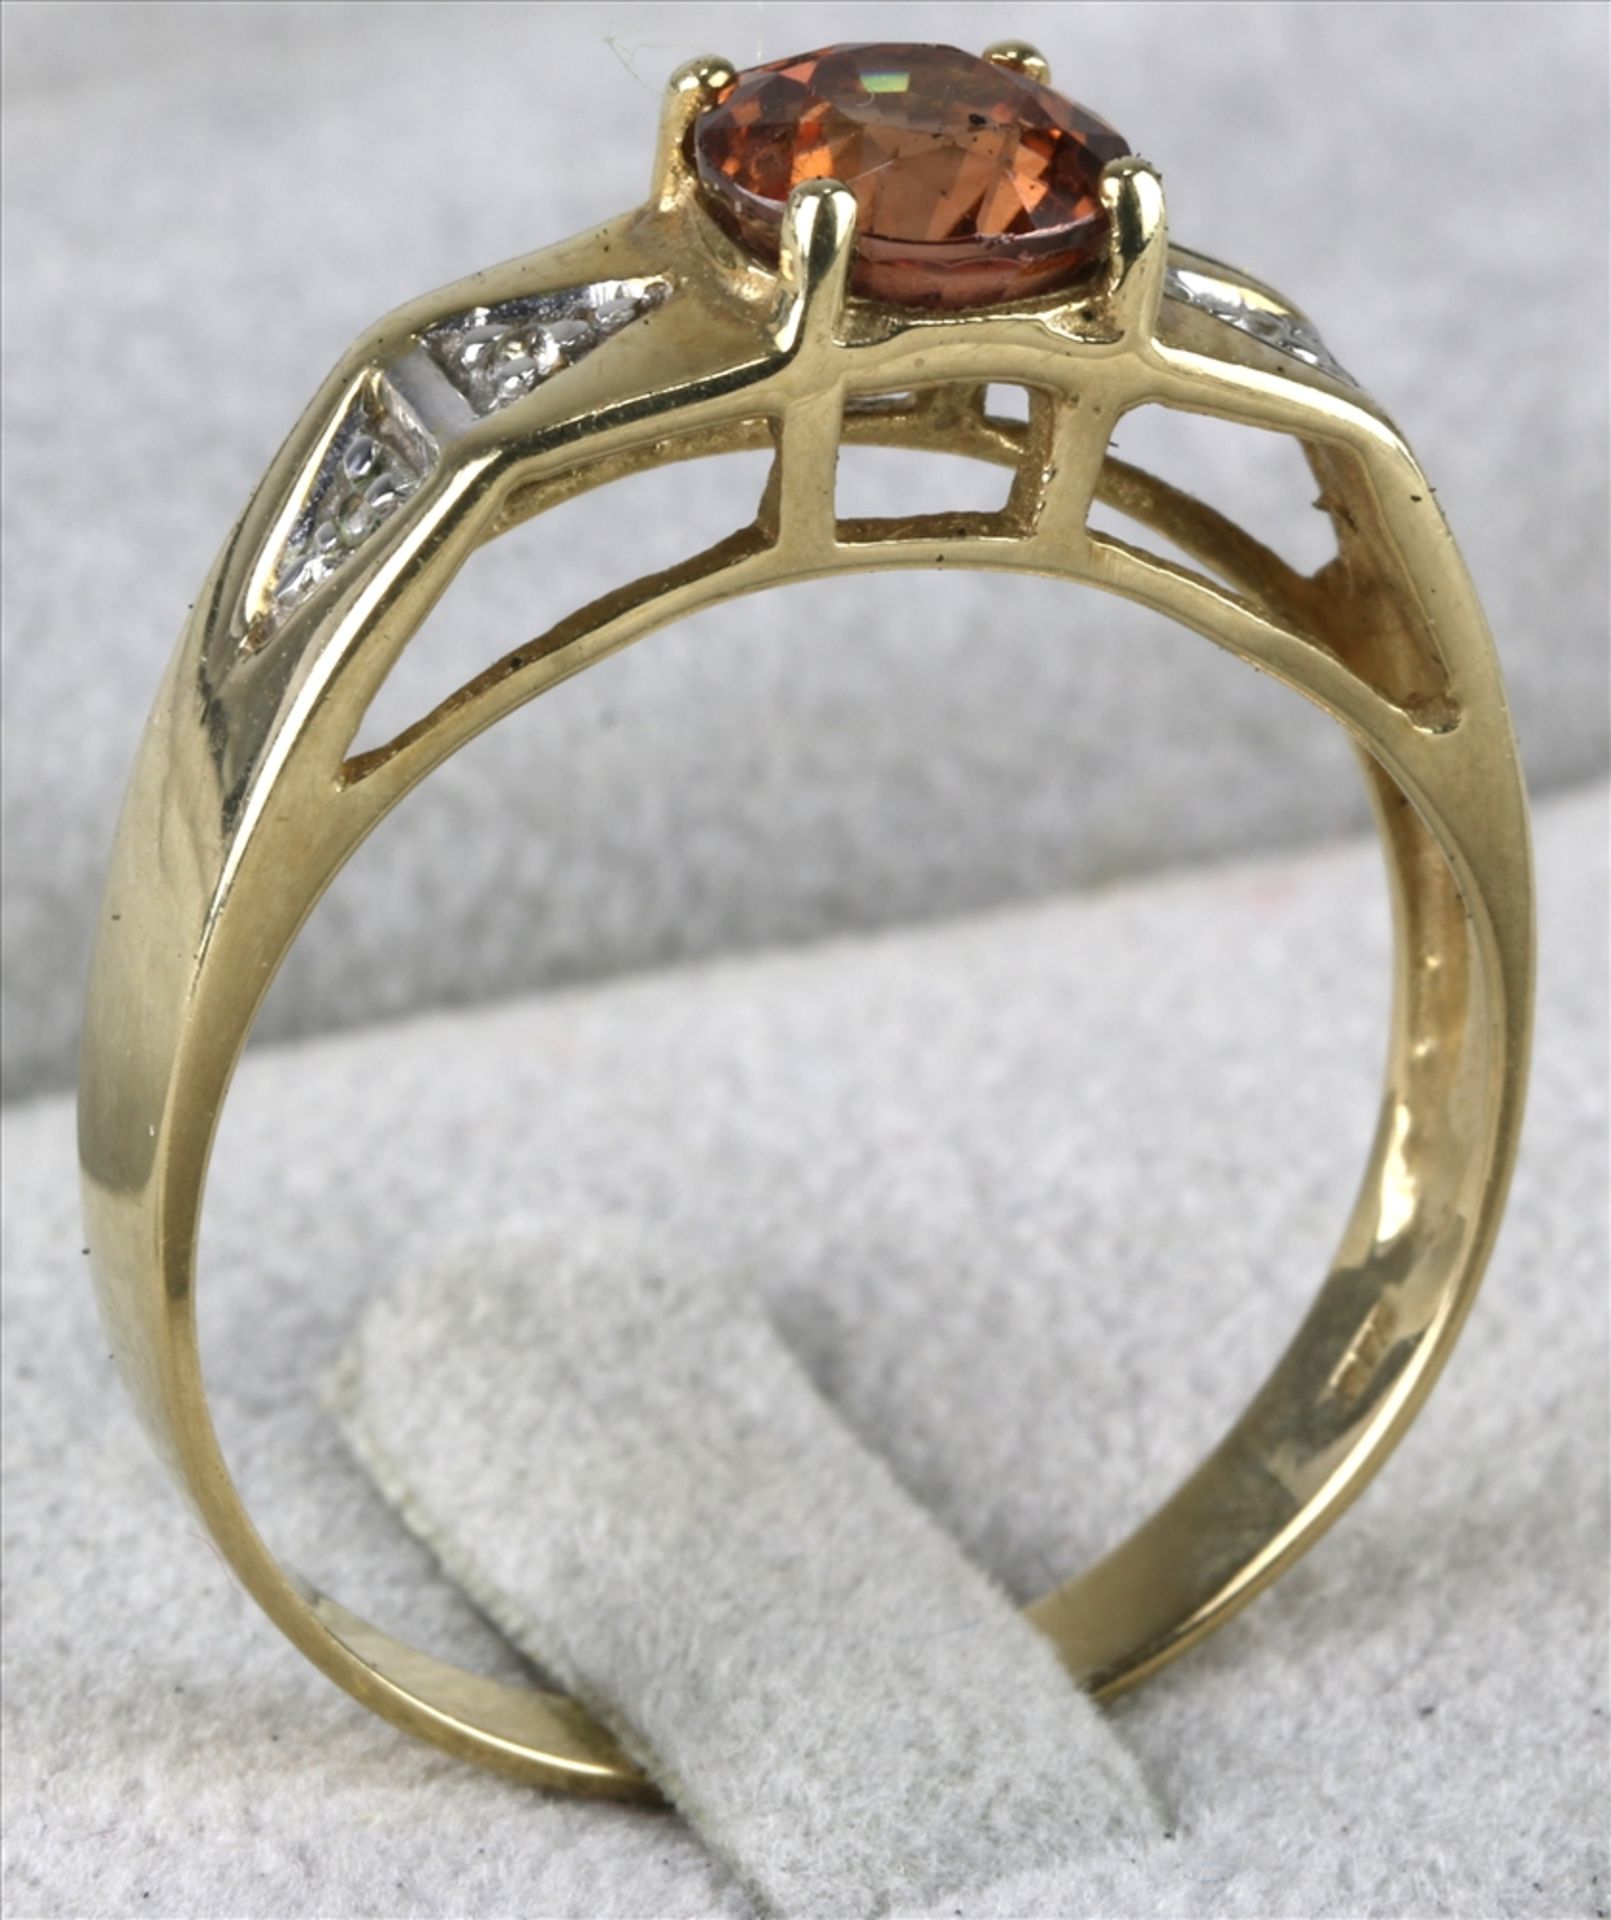 Citrin Diamant Ring England 20. Jh. GG 375 punziert. Glatte Ringschiene und durchbrochen